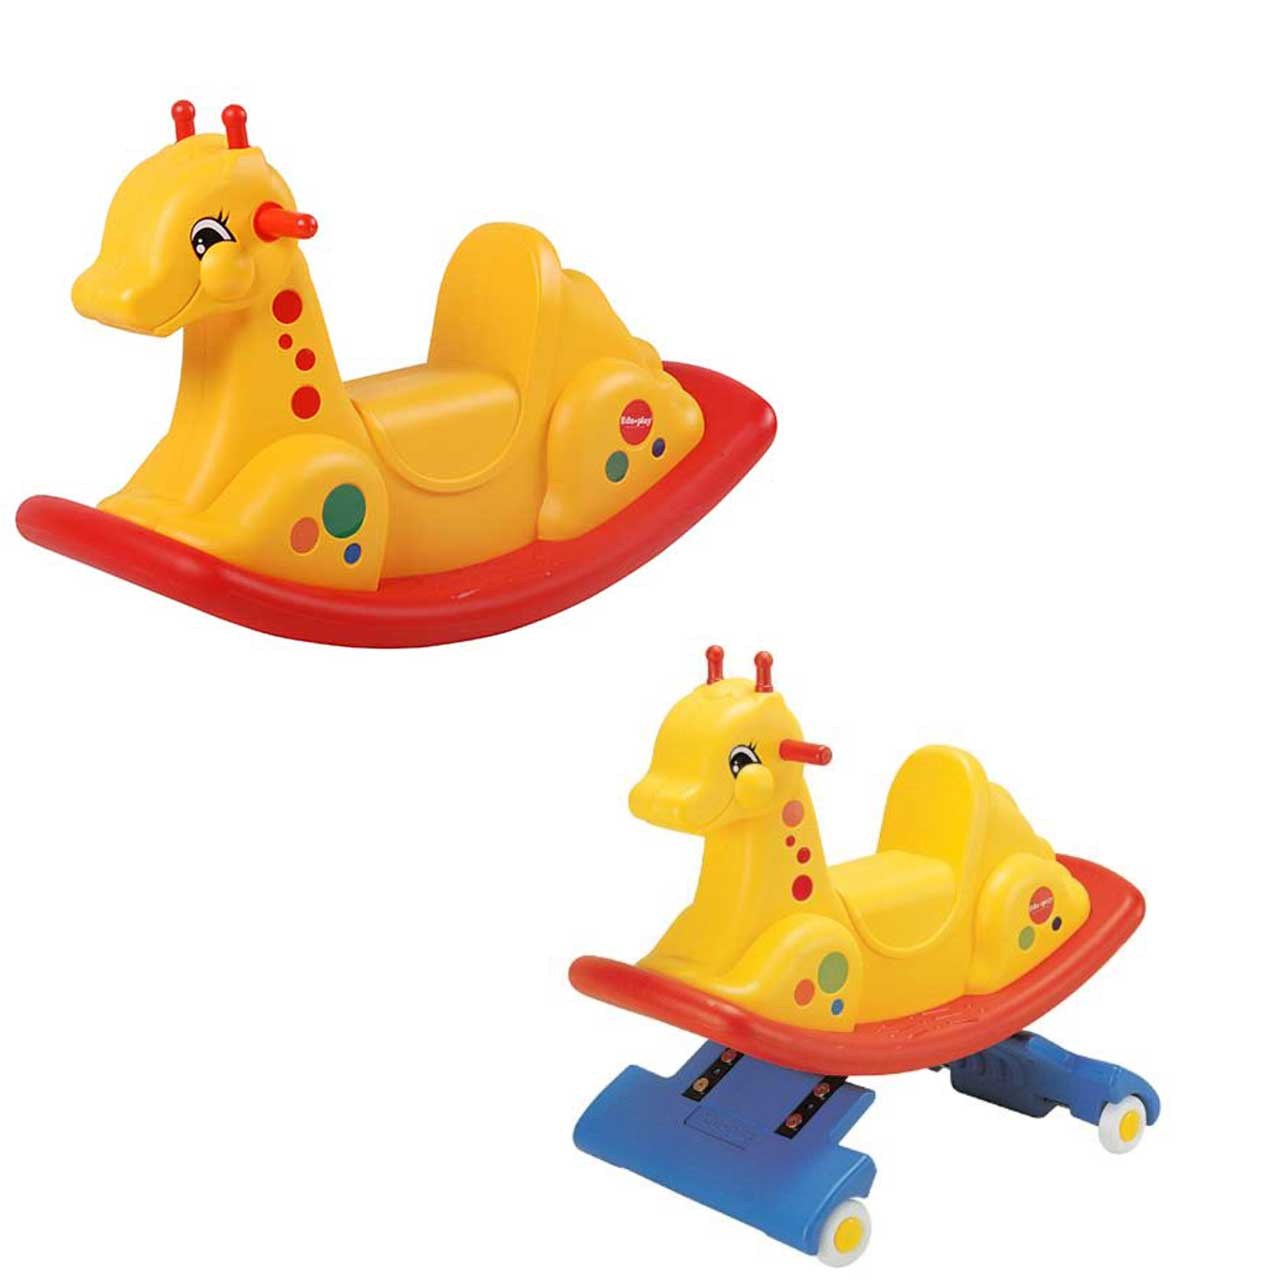 اسباب بازی چرخدار کودک اجوپلی مدل Giraffe